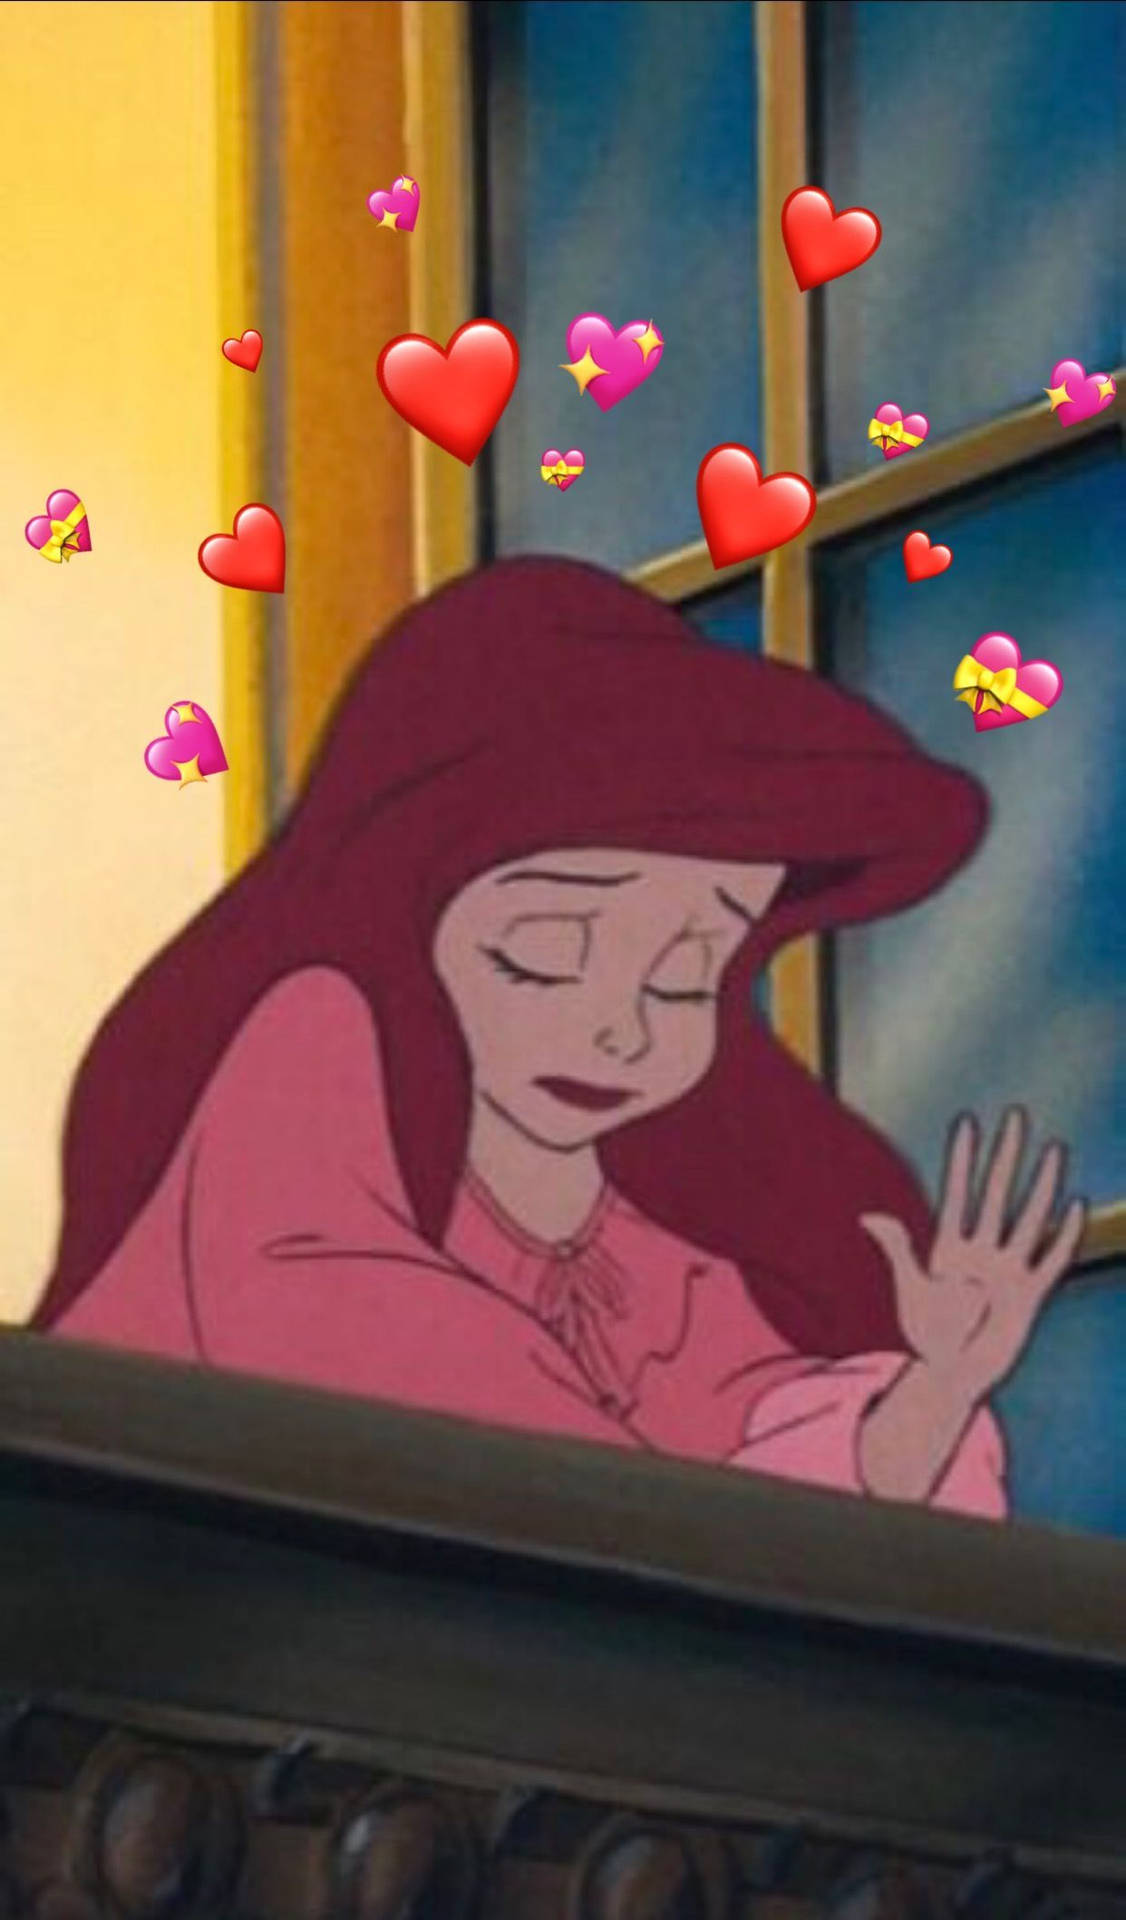 Cute Aesthetic Disney Princess Ariel Hearts Wallpaper